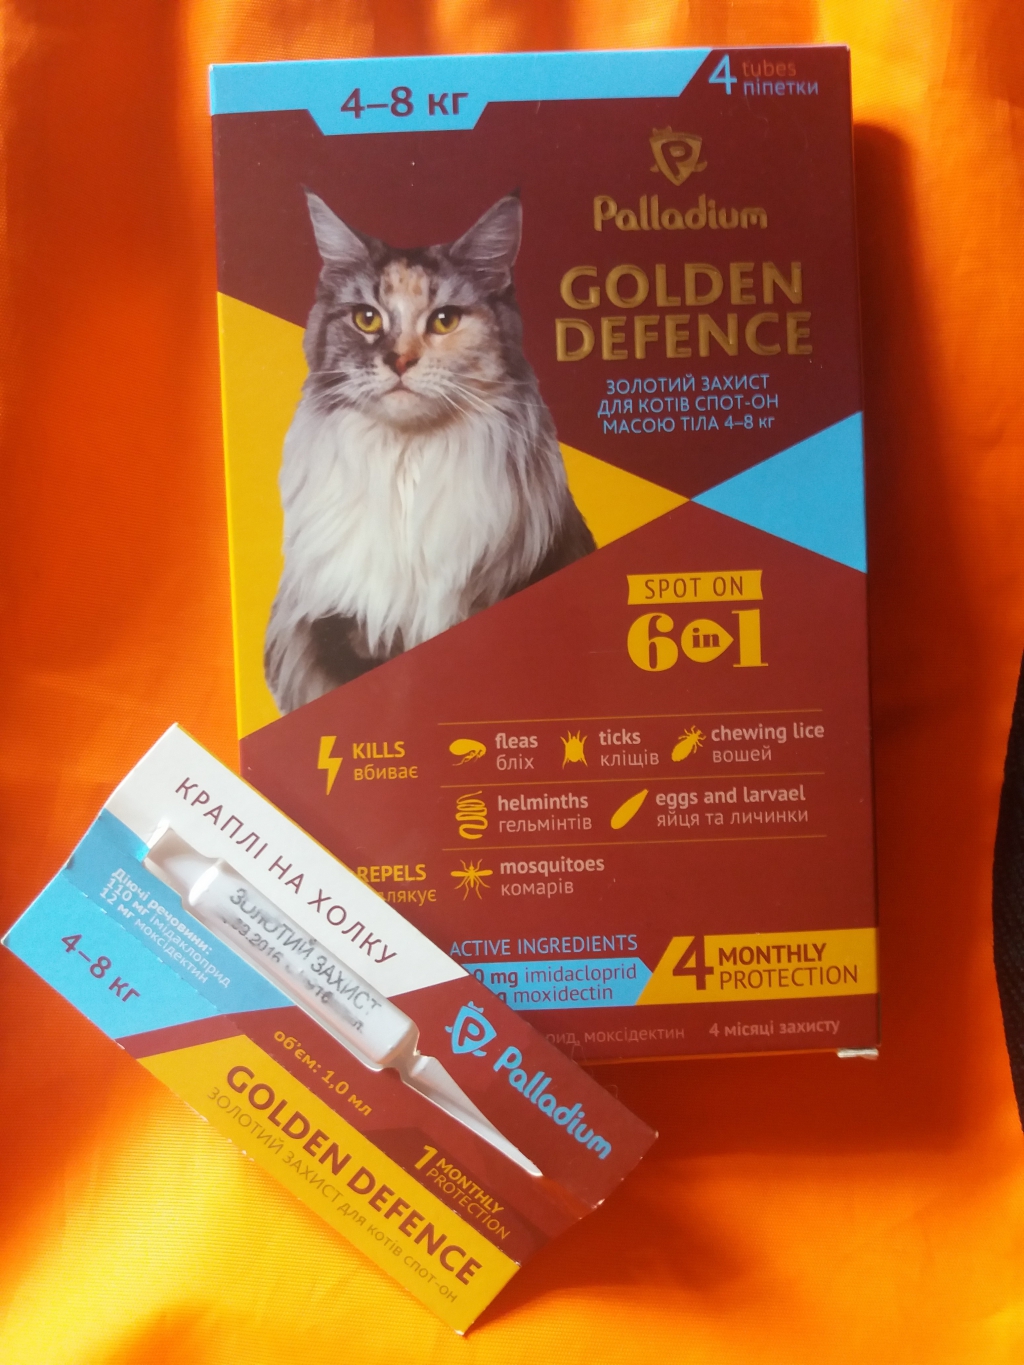 Капли на холку Palladium Golden Defence от паразитов для кошек весом от 4 до 8 кг Логотип(logo)